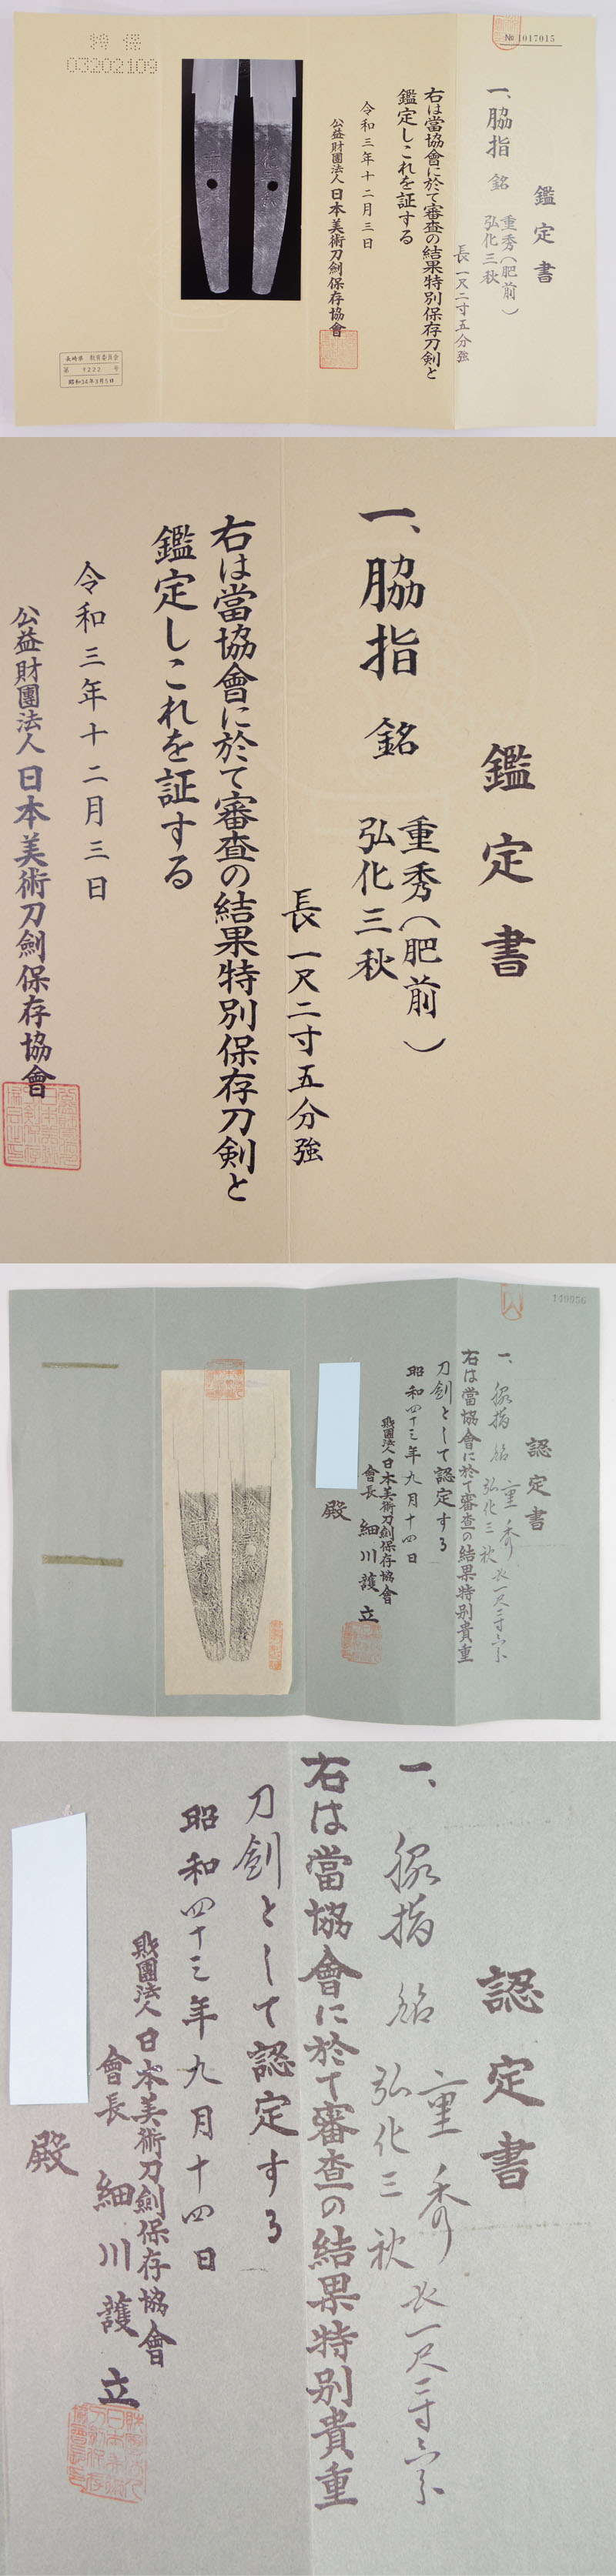 脇差　重秀(林重秀) (肥前) (大慶直胤門人) (大村藩士)　　　弘化三秋 Picture of Certificate